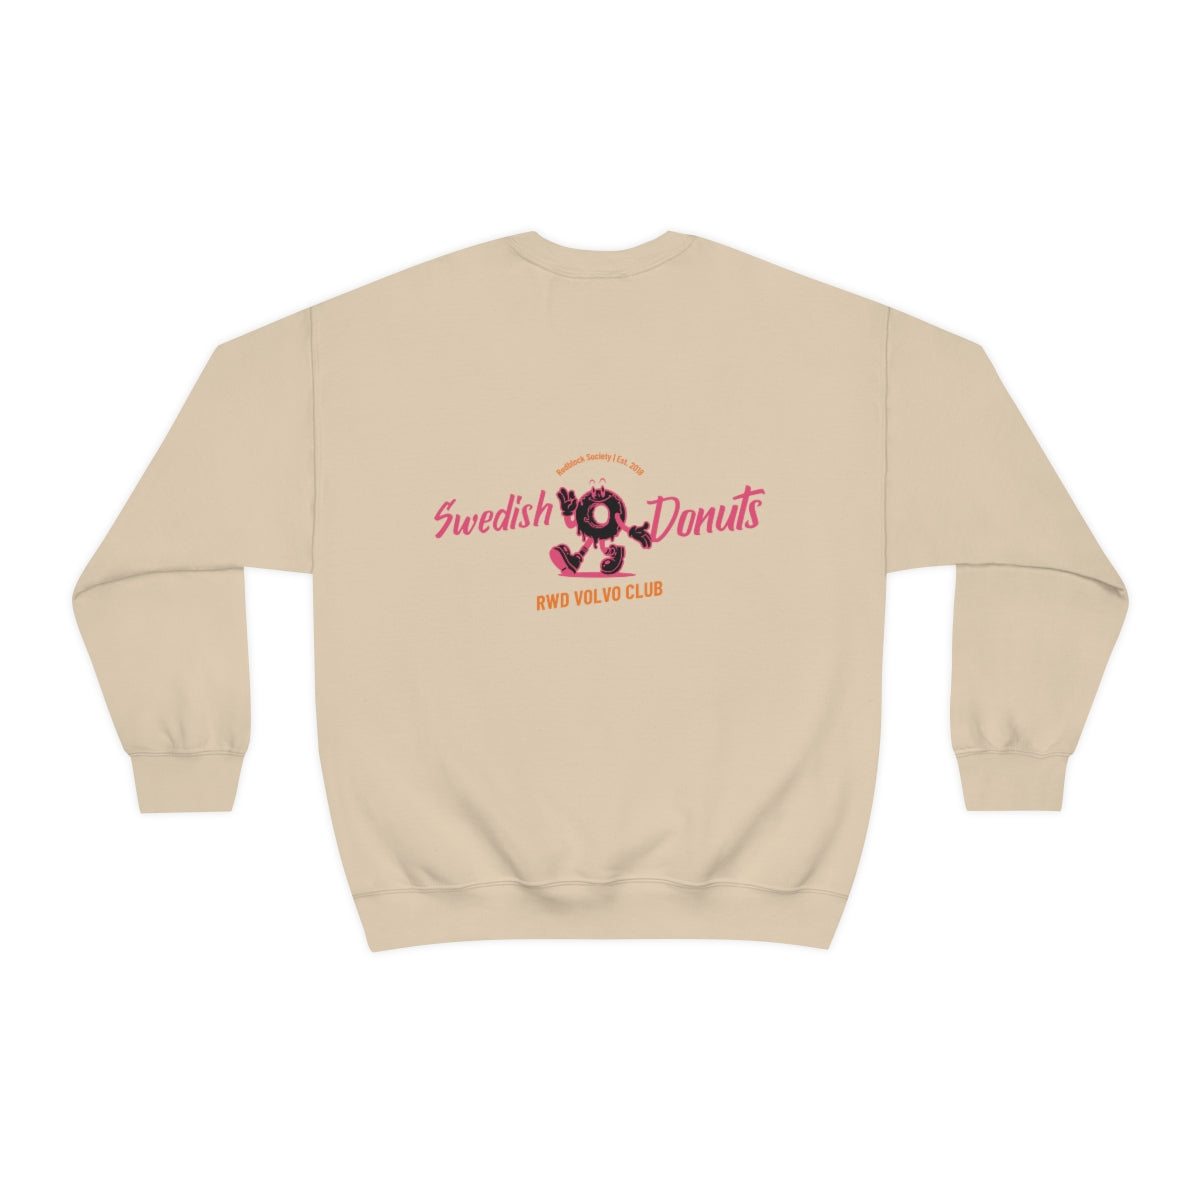 Swedish Donuts Sweatshirt